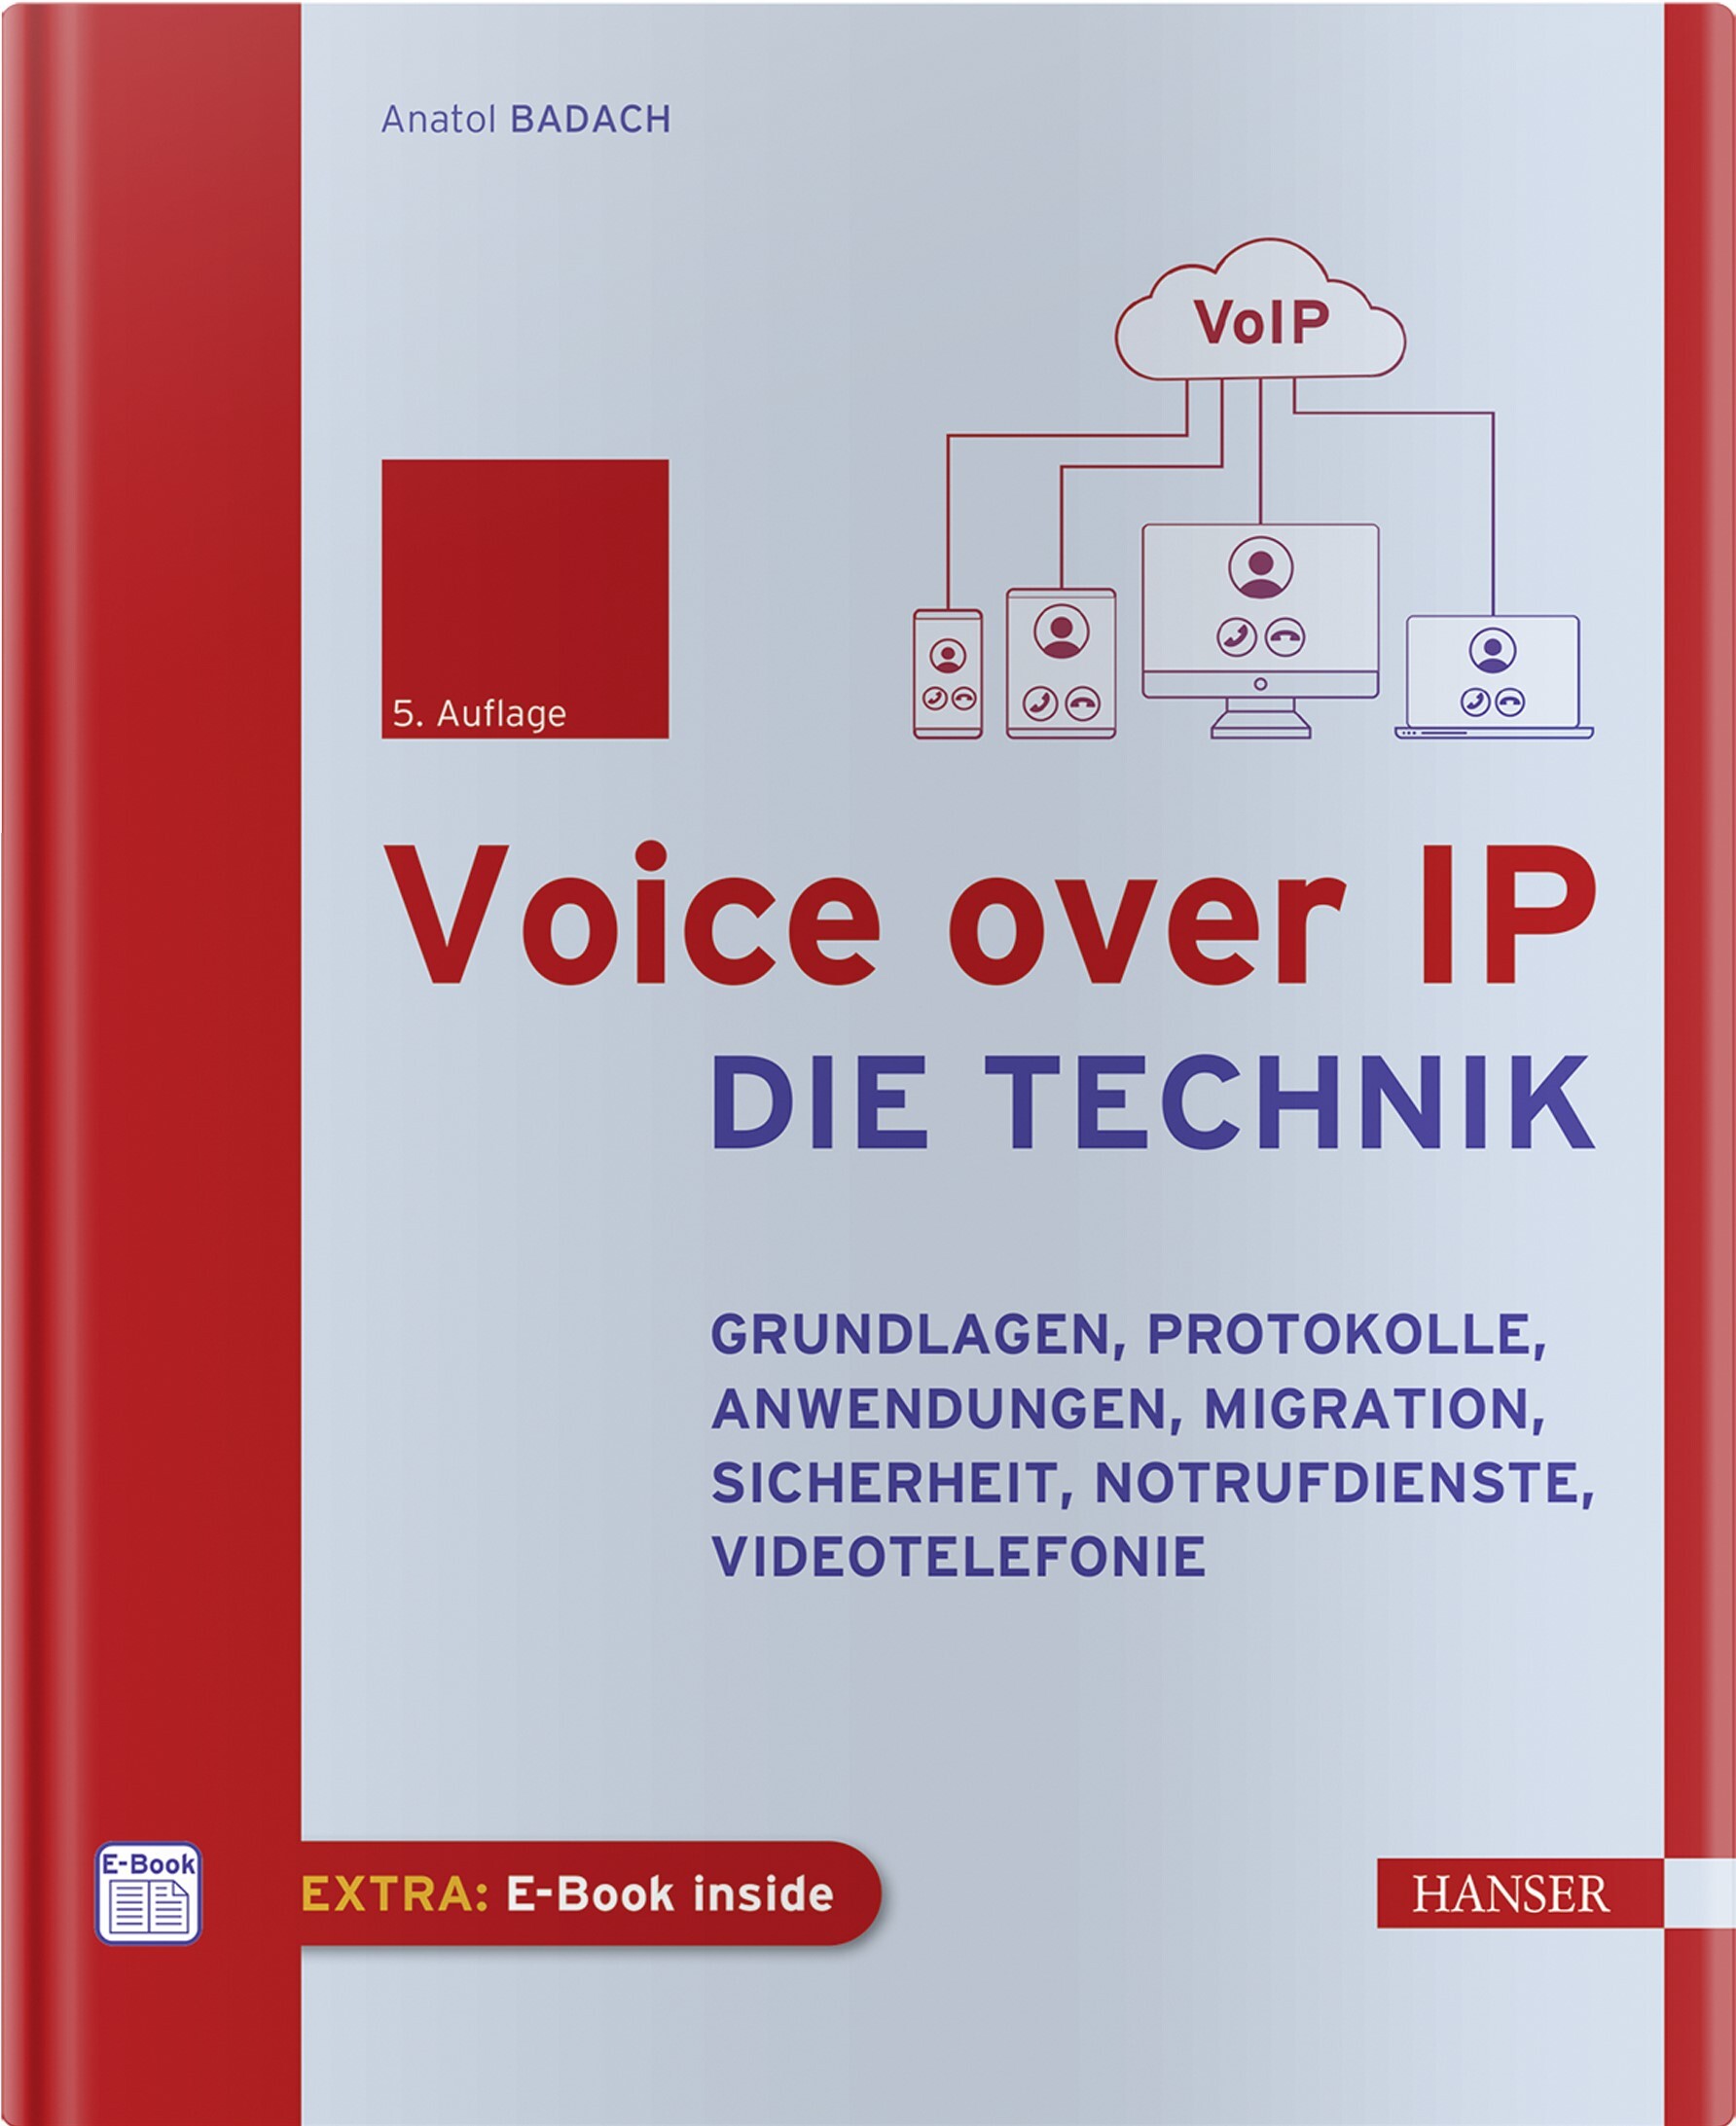 Voice over IP - Die Technik (5. Auflage)